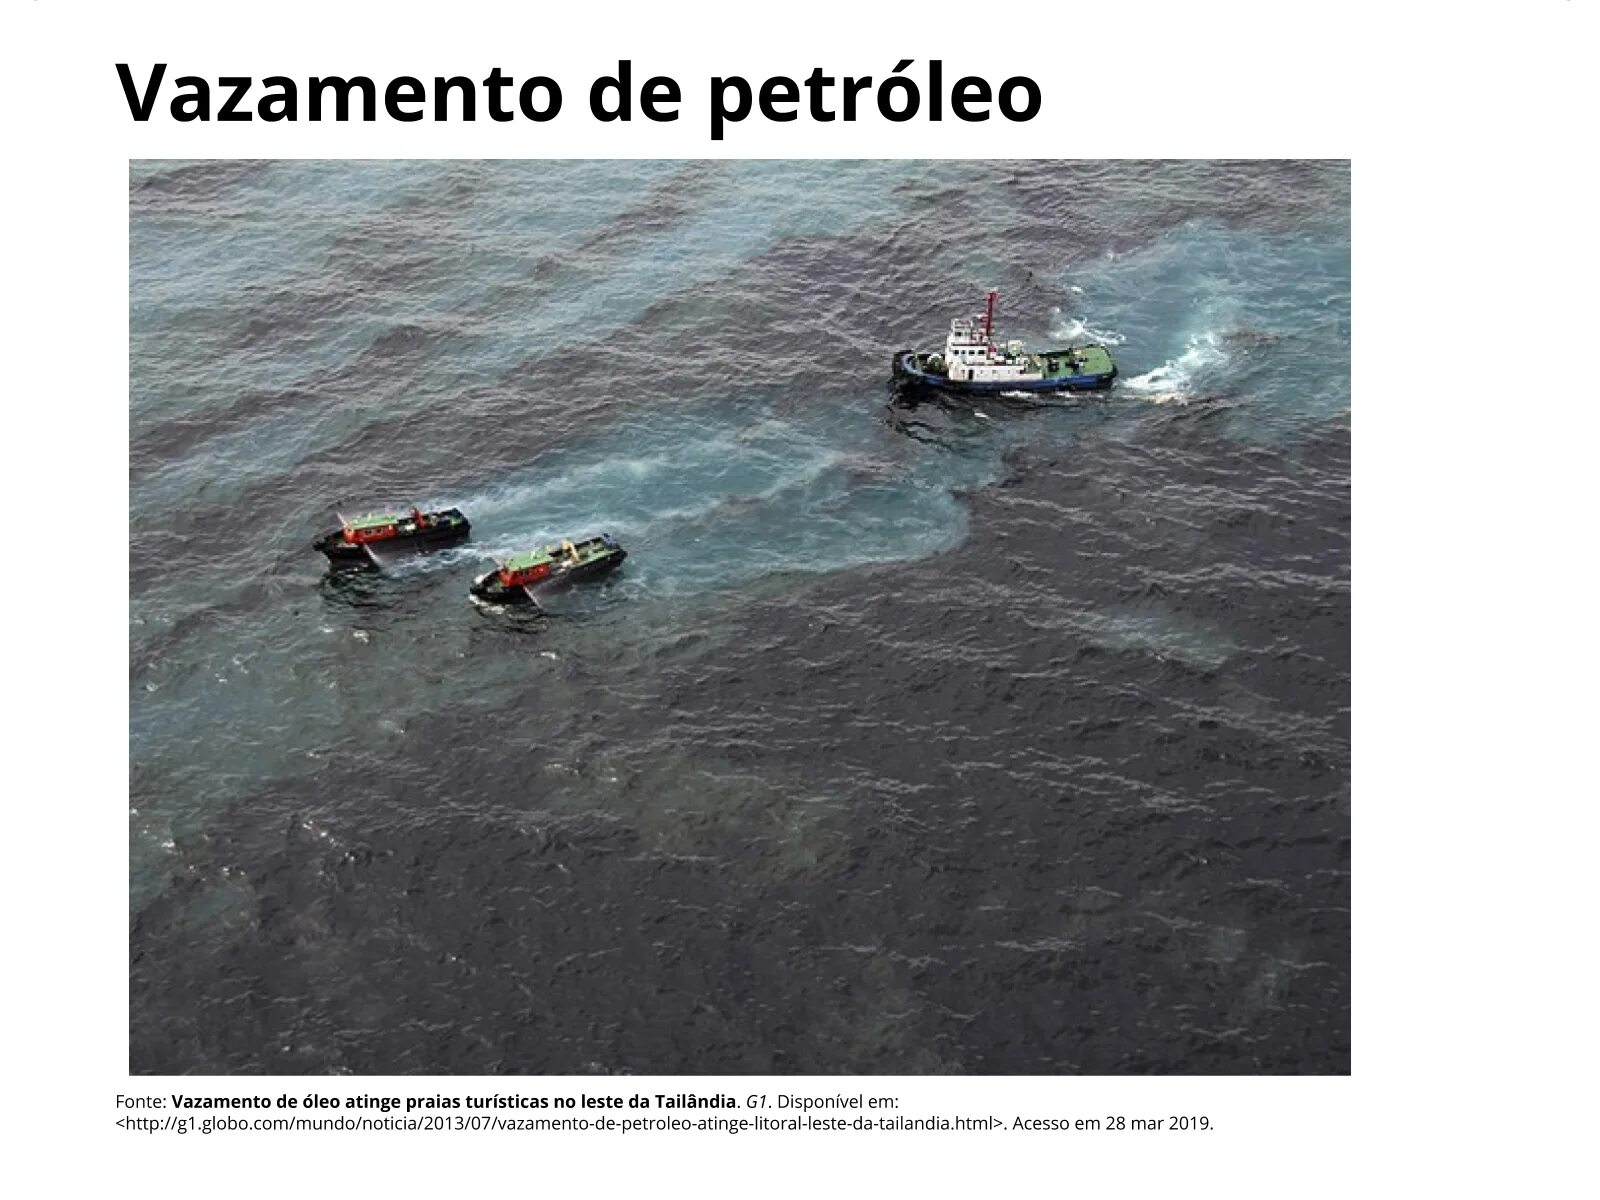 Миллионы тонн воды. Разлив нефти в Баренцевом море. Черное море загрязненное нефтепродуктами. Нефтяное загрязнение мирового океана. Разлив нефти в персидском заливе.